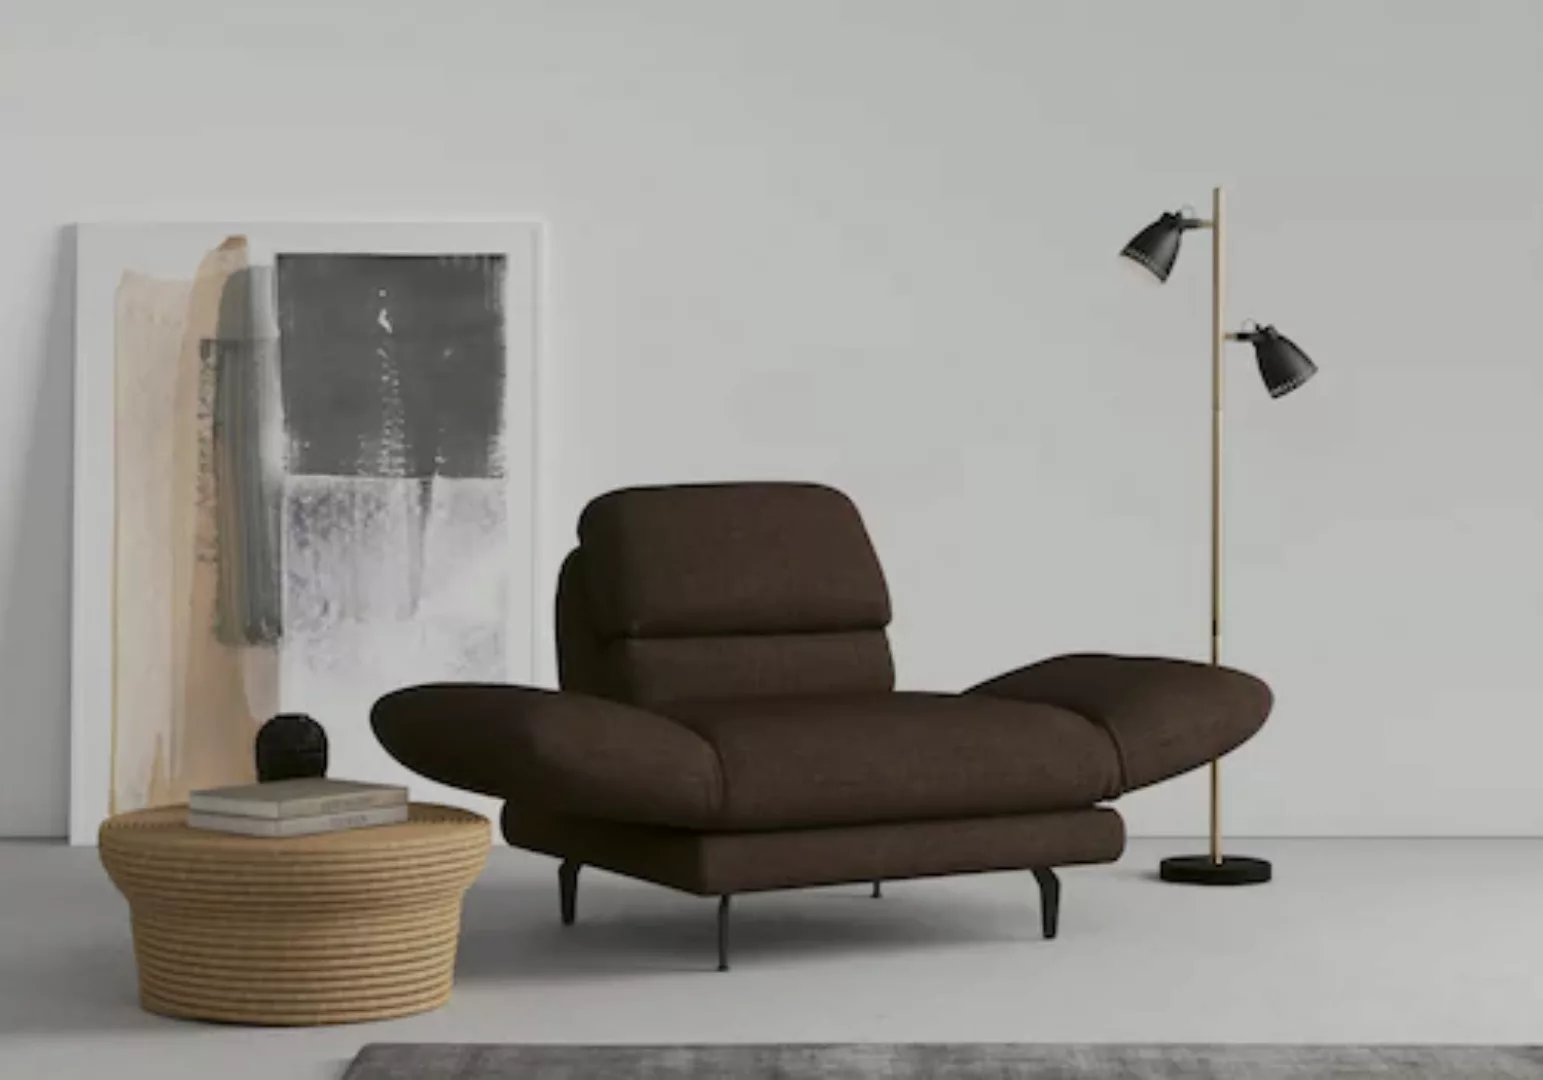 DOMO collection Sessel "Padova", wahlweise mit Arm- und Rückenfunktion günstig online kaufen